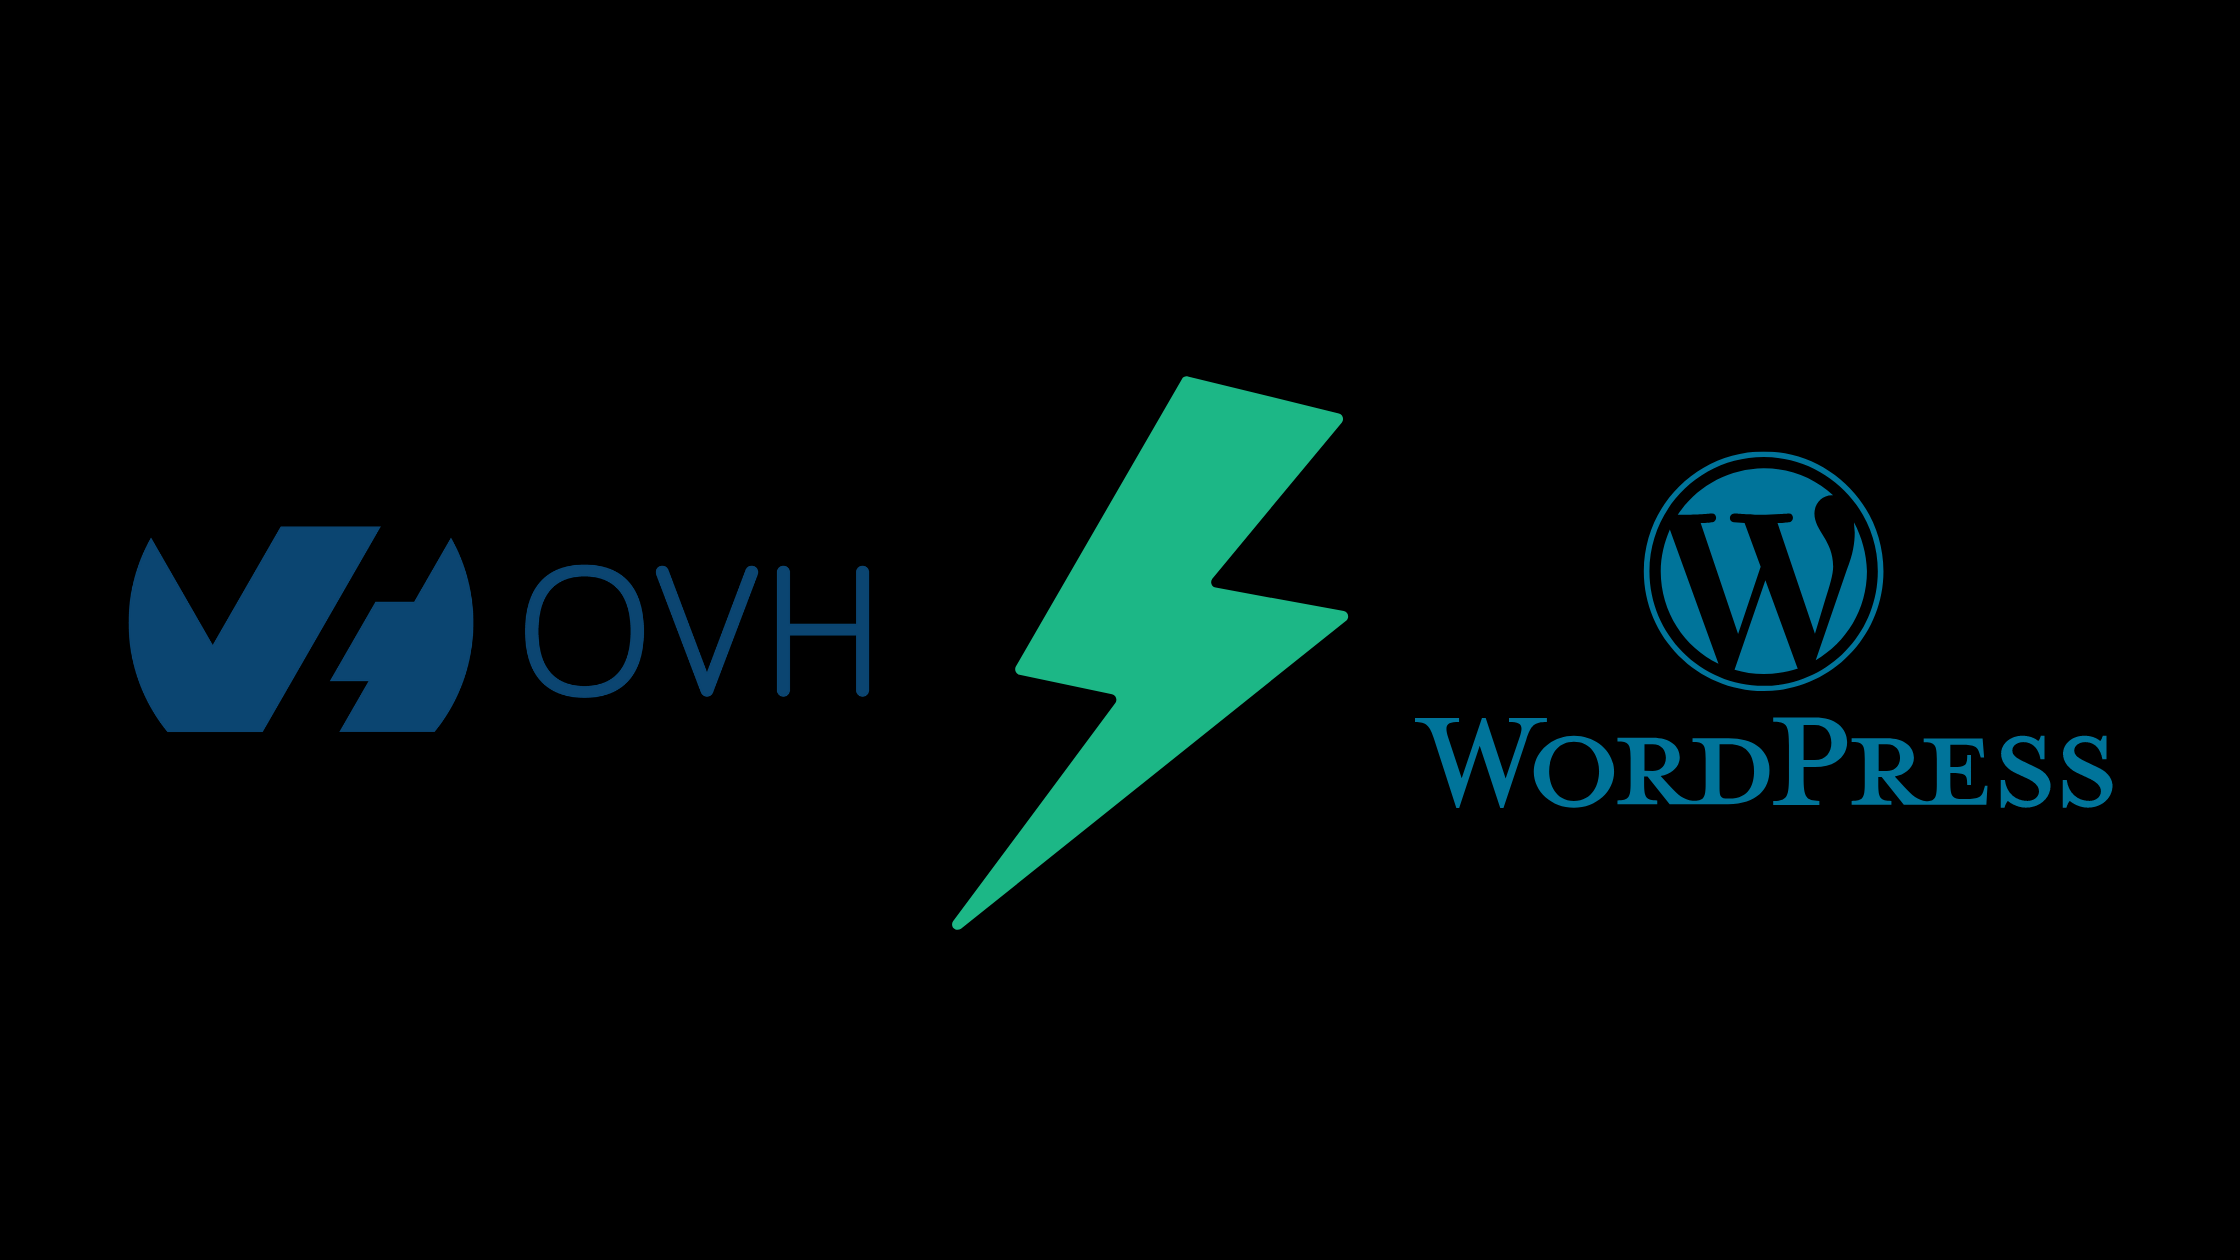 Comment installer wordpress sur ovh en 4 étapes